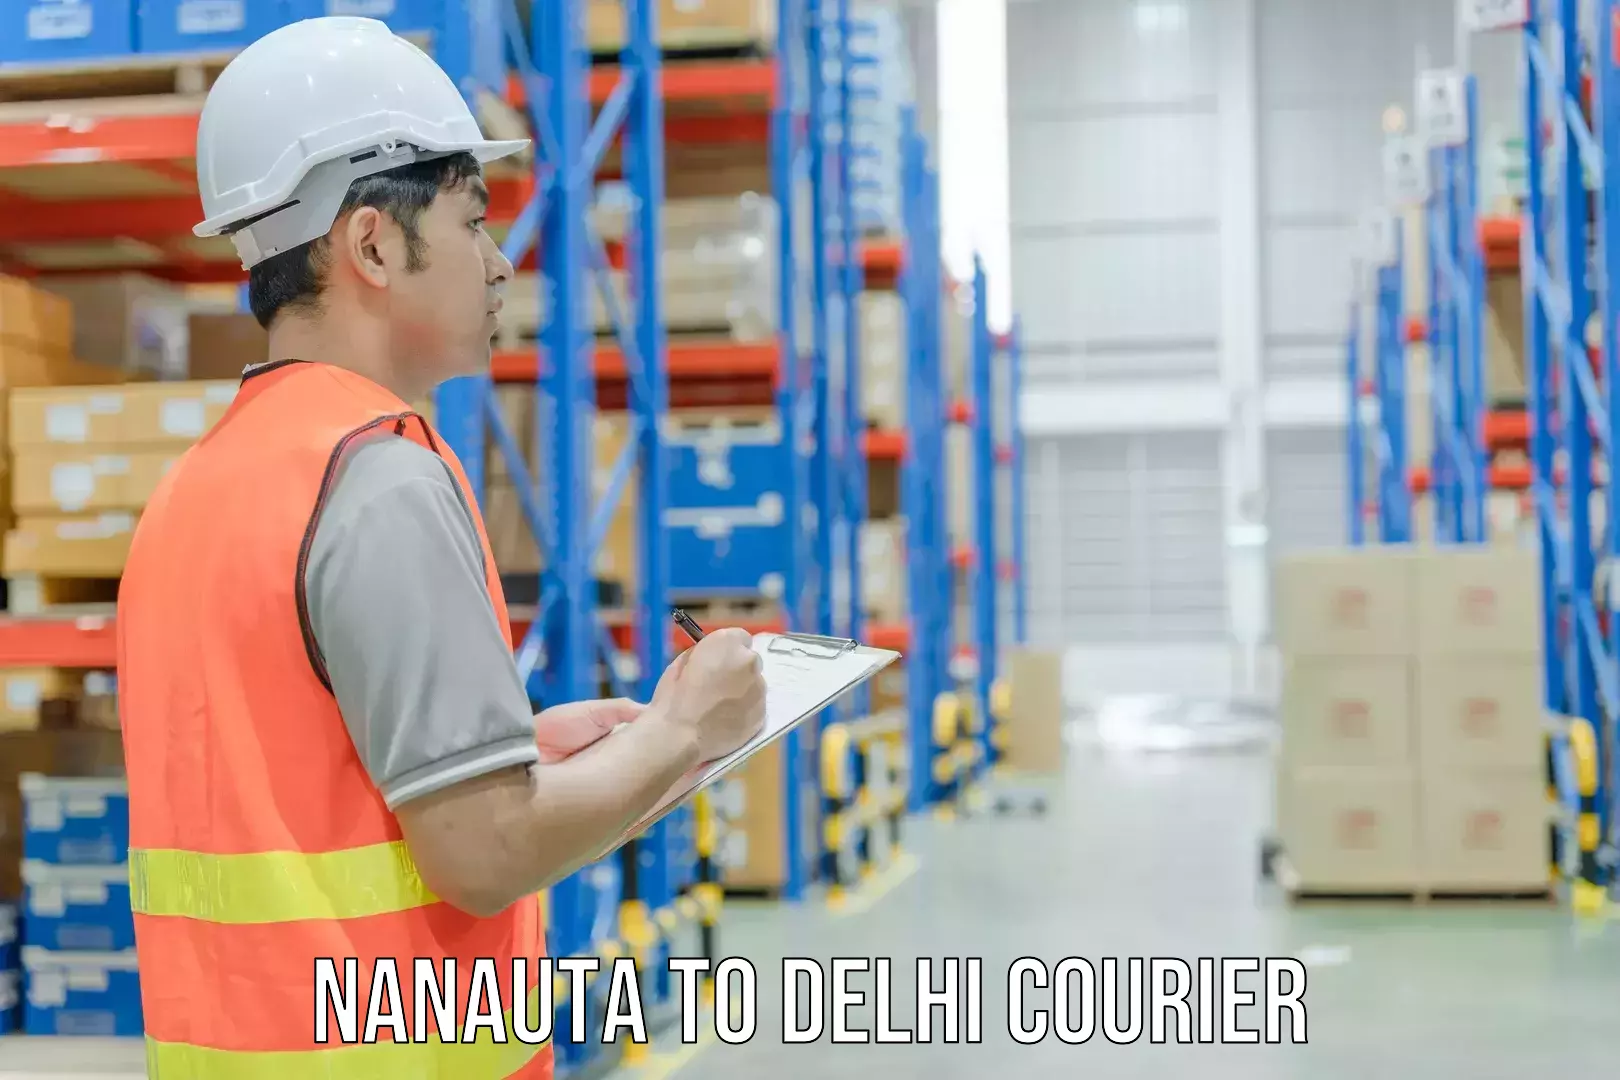 Reliable courier services in Nanauta to Jamia Millia Islamia New Delhi